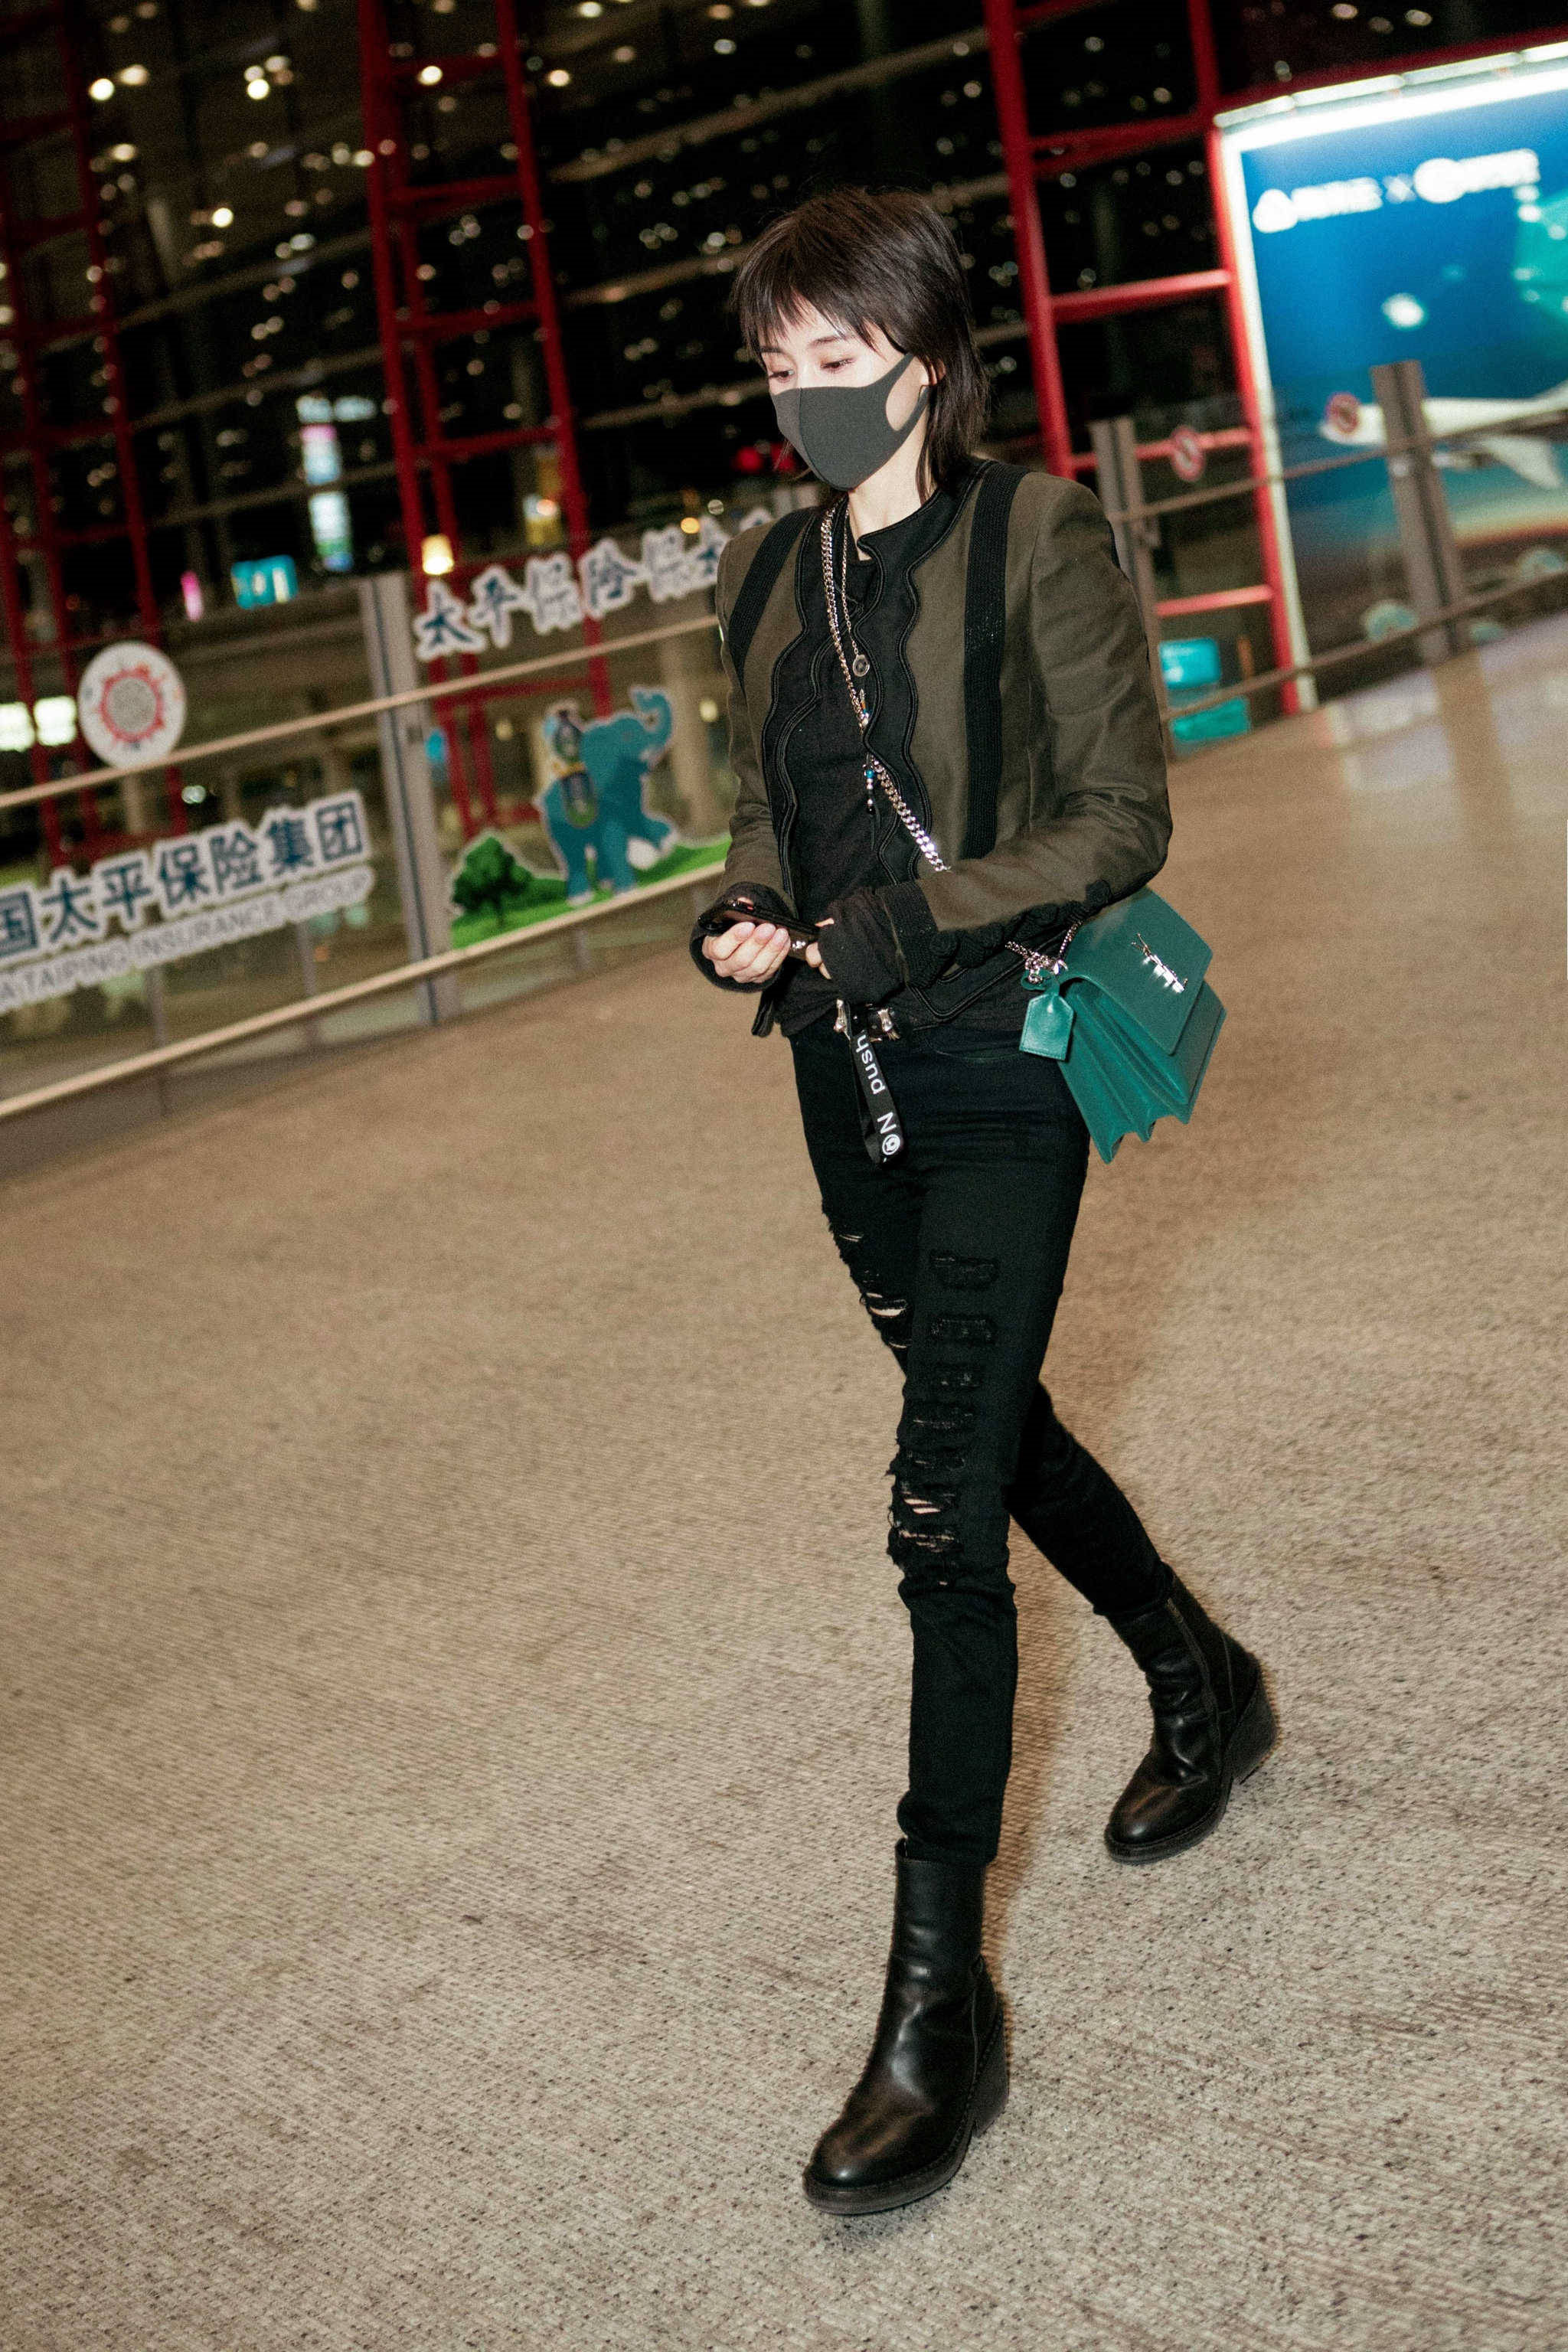 王子文亮相机场,一身黑色干练又帅气,搭配绿色的ysl包包独具个性